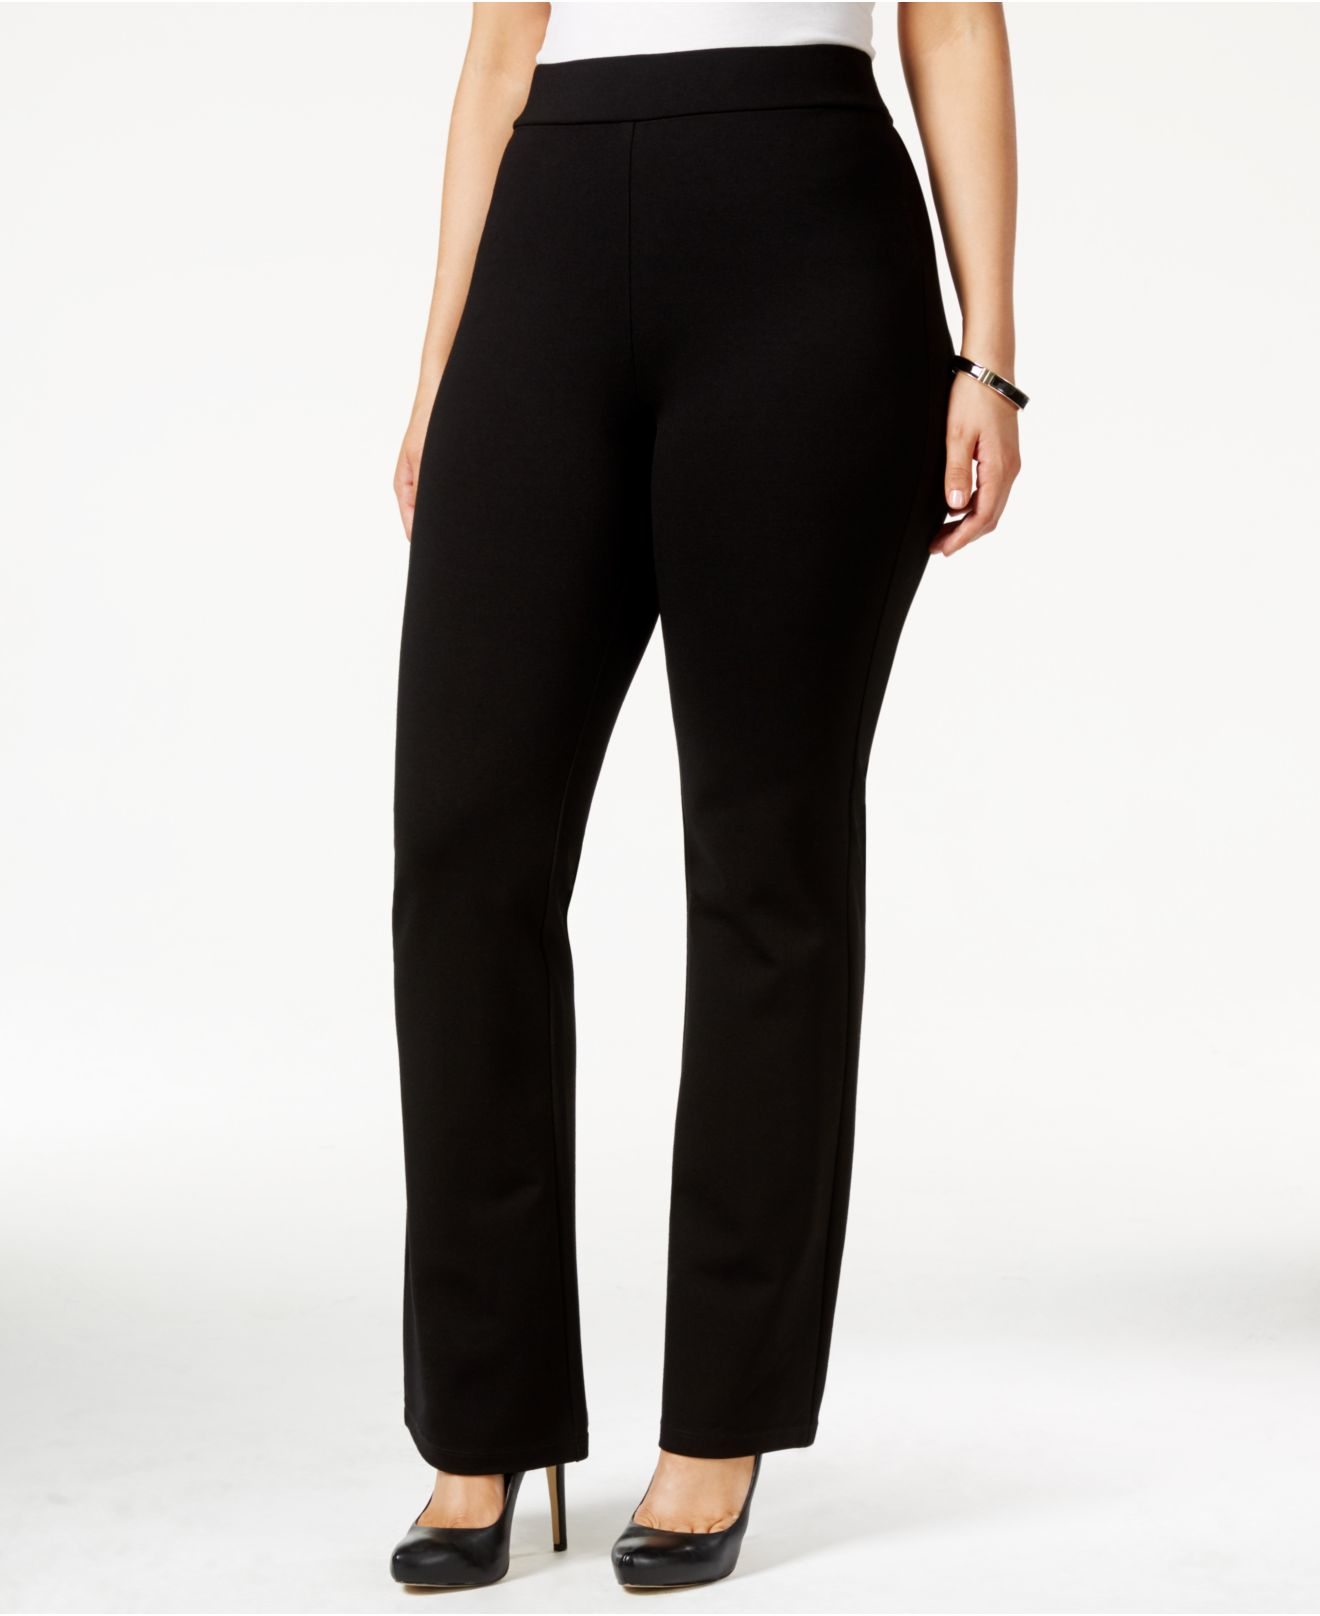 NYDJ Plus Size Belinda Pull-on Bootcut Pants in Black - Lyst